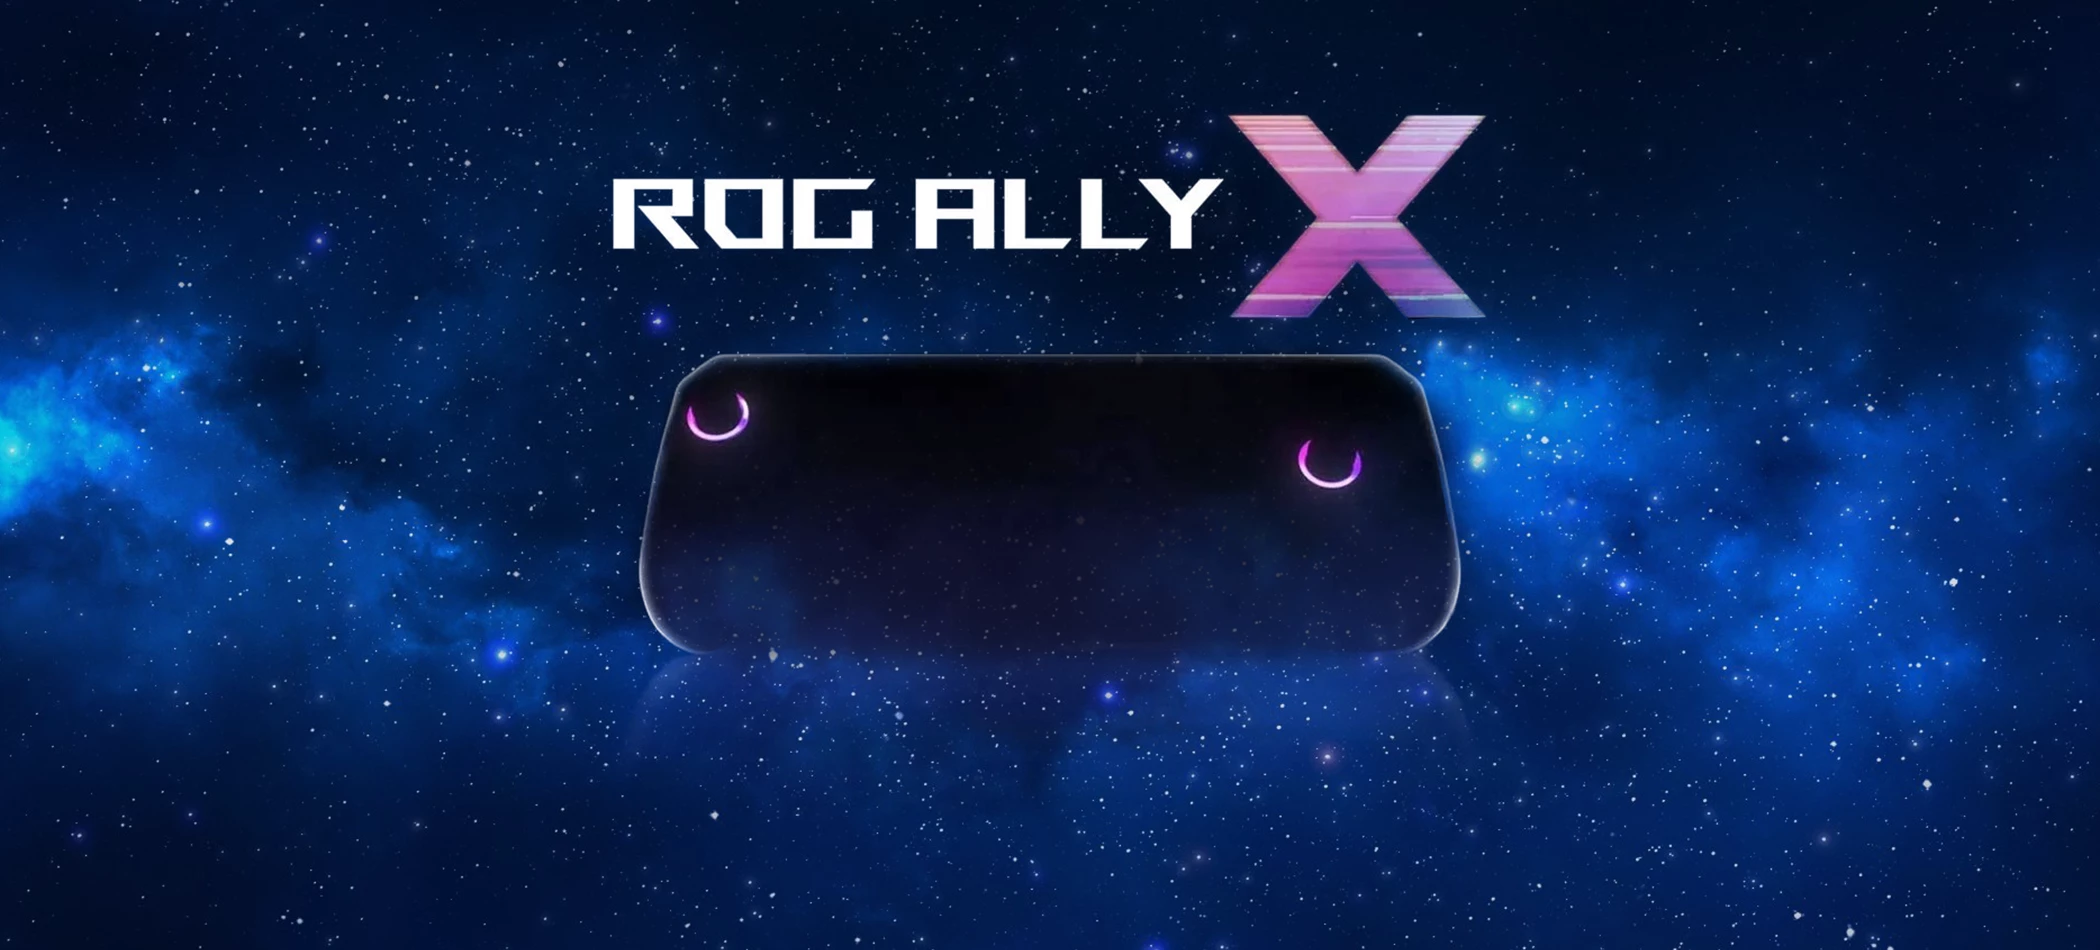 در مورد دسته بازی ROG Ally X چه میدانیم